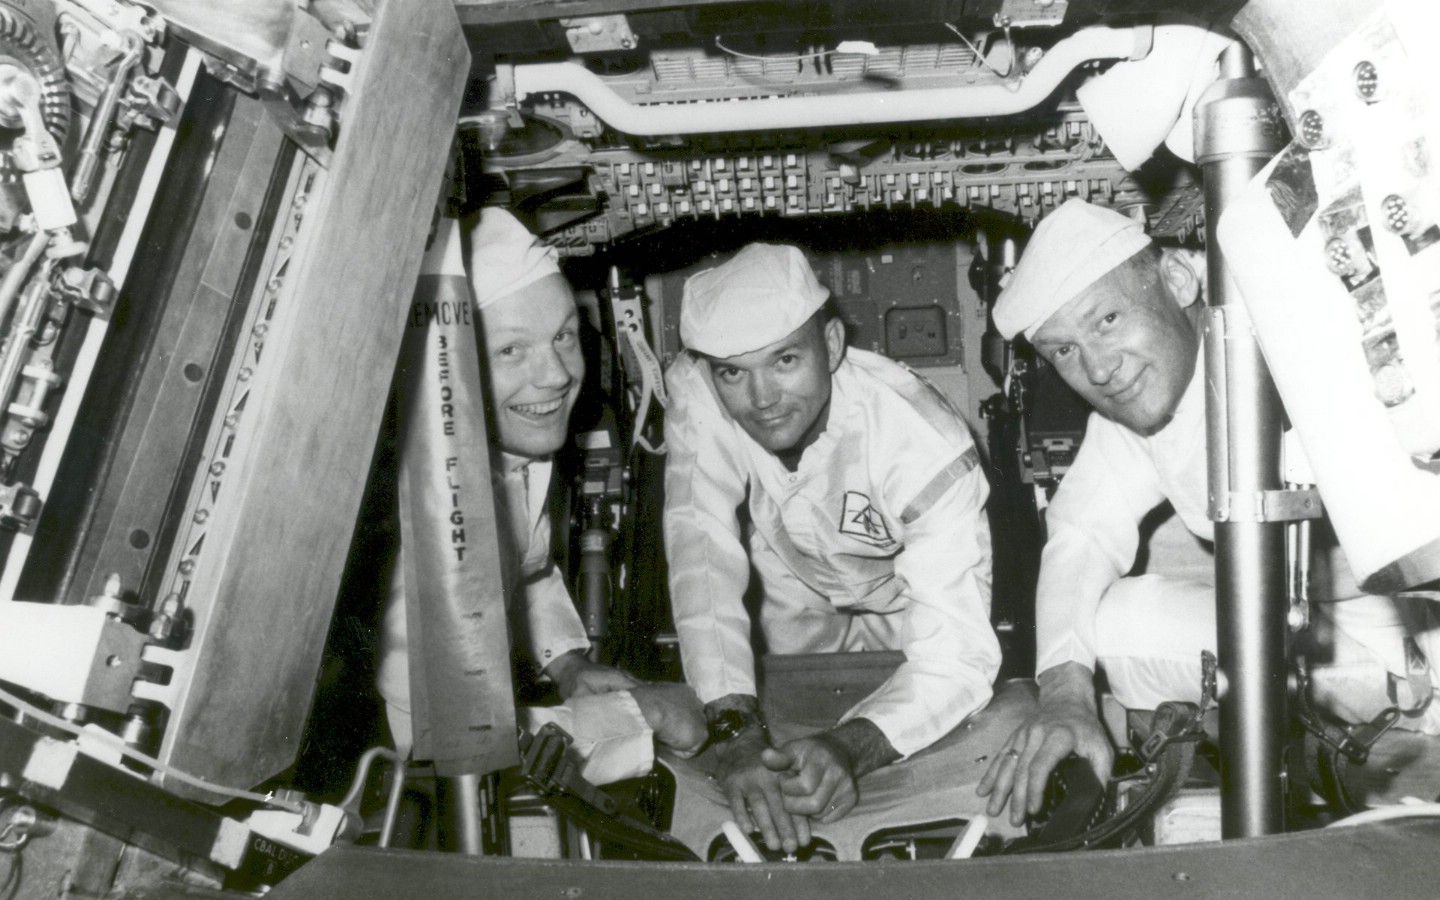 壁纸1440x900One Giant Leap for Mankind  Apollo 11 Crew Conduct Checks in the Command Module 登月舱日常检查壁纸 阿波罗11号登月40周年纪念壁纸壁纸 阿波罗11号登月40周年纪念壁纸图片 阿波罗11号登月40周年纪念壁纸素材 人文壁纸 人文图库 人文图片素材桌面壁纸